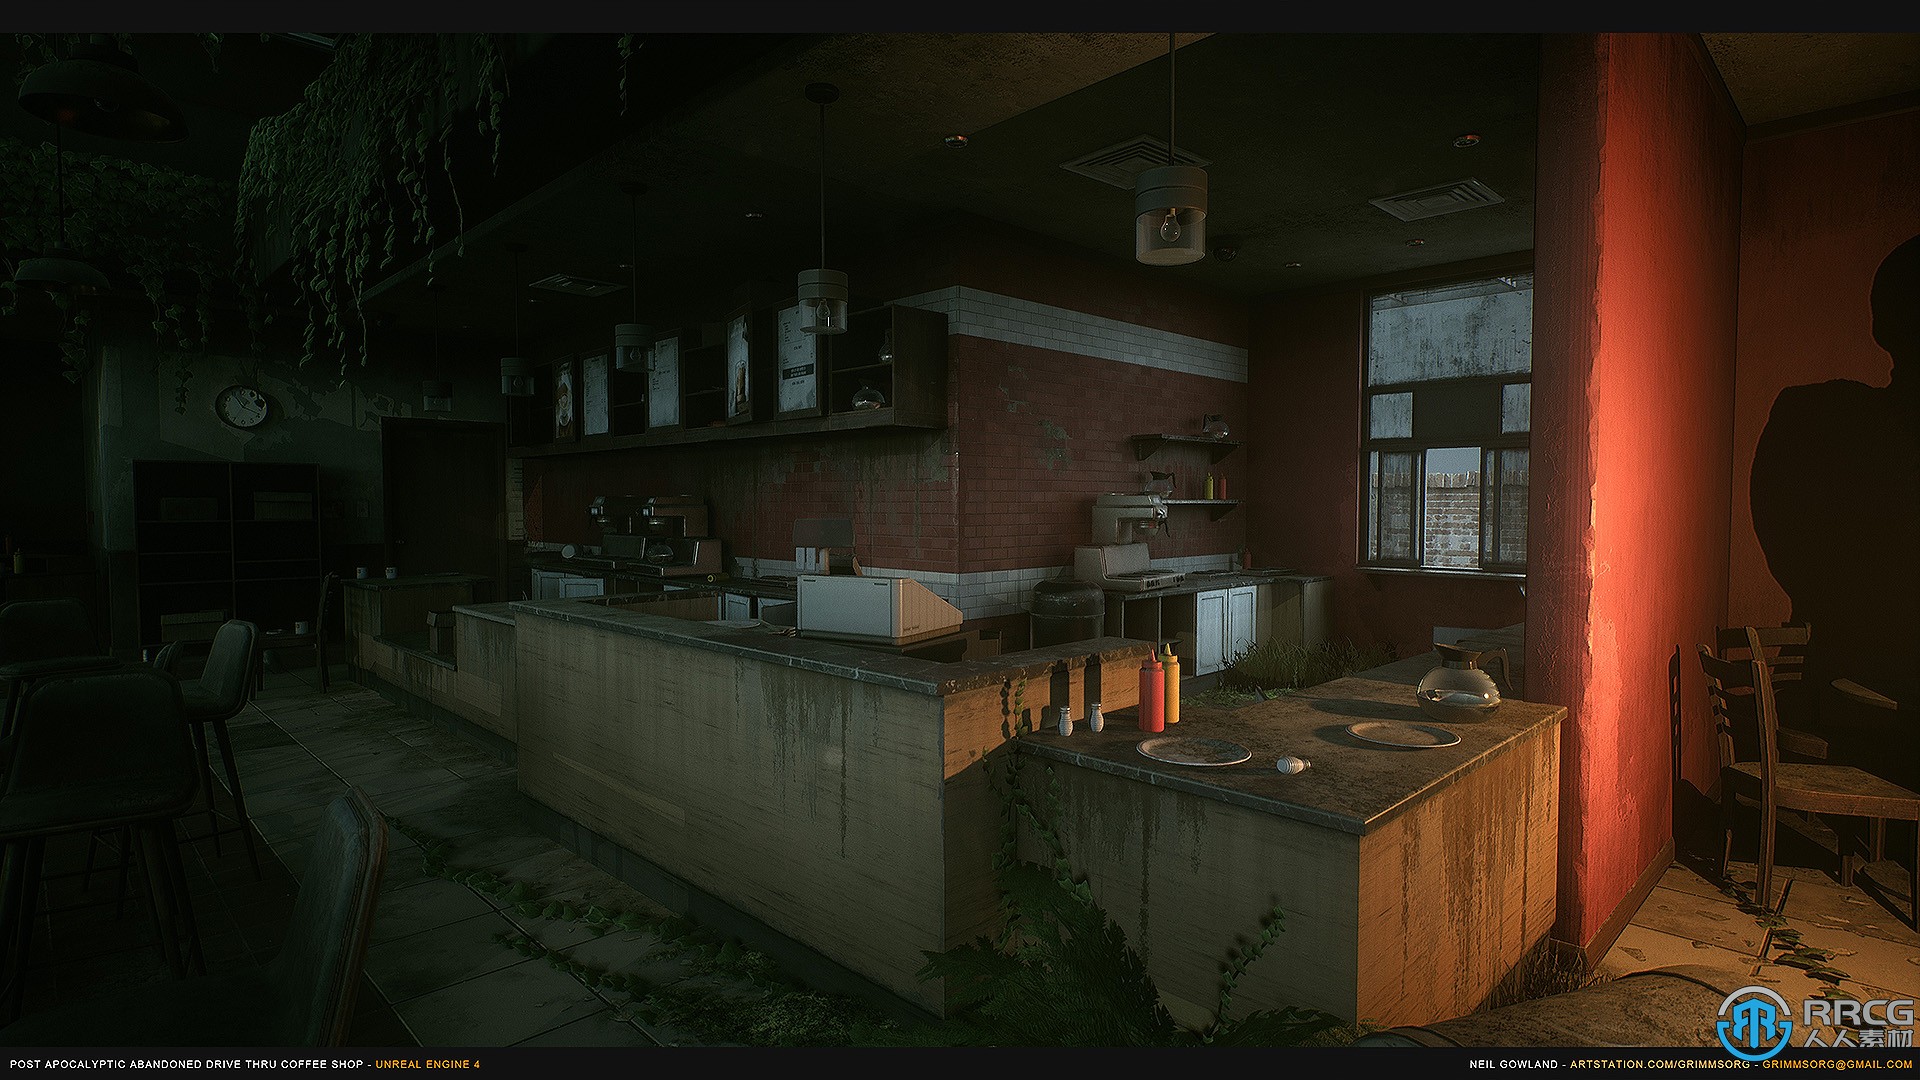 世界末日废弃咖啡店环境场景Unreal游戏素材